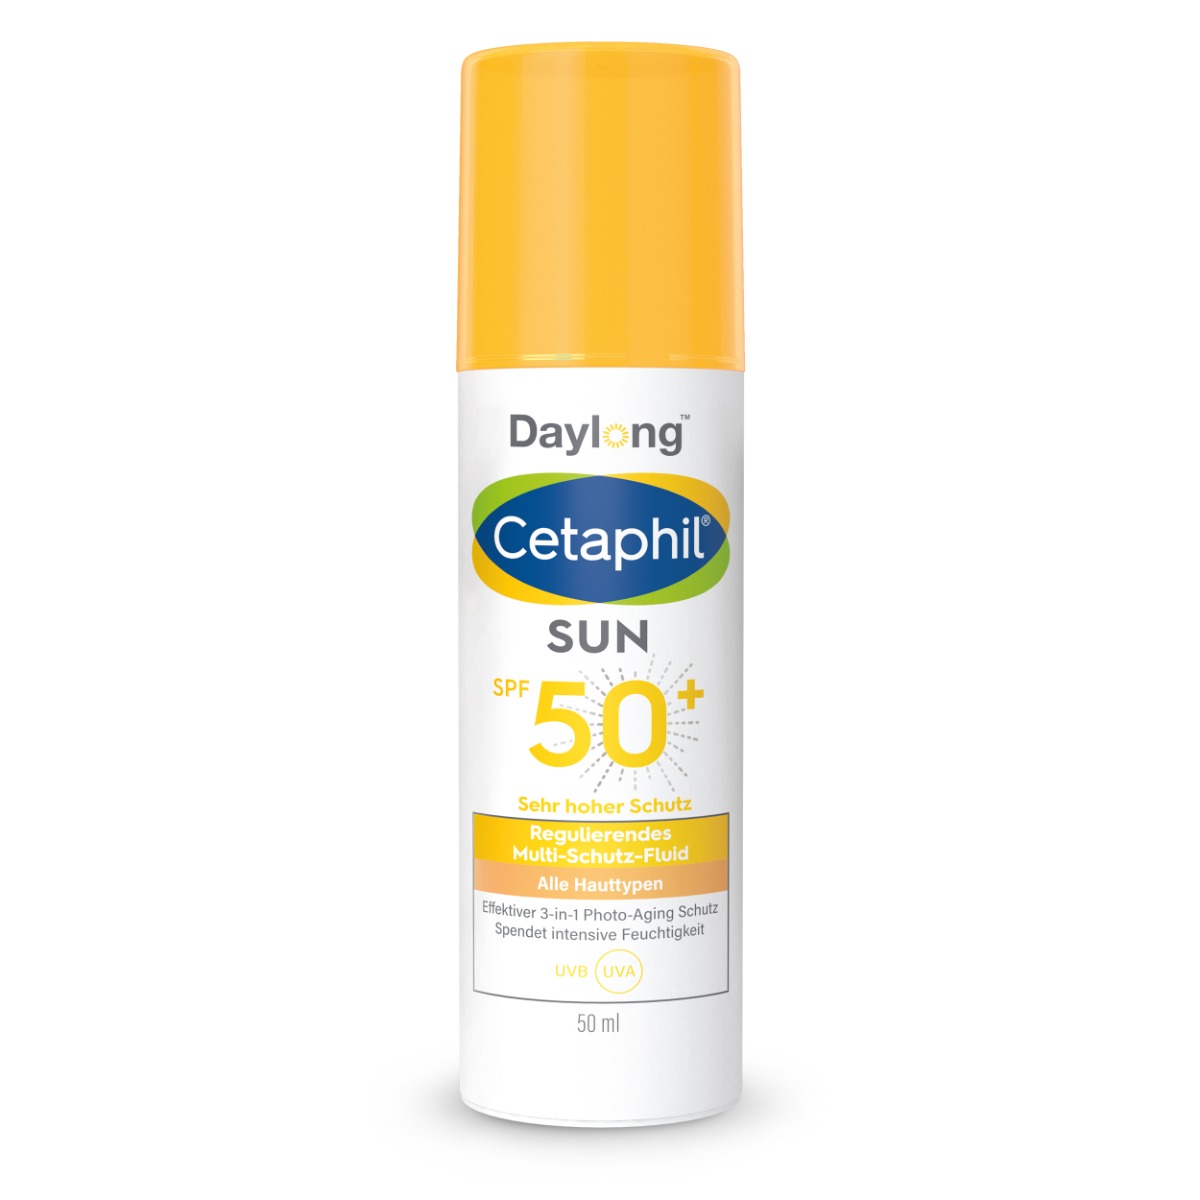 Cetaphil Sun Daylong Regulierendes Multi-Schutz-Fluid Gesicht SPF 50+  - 50 Milliliter